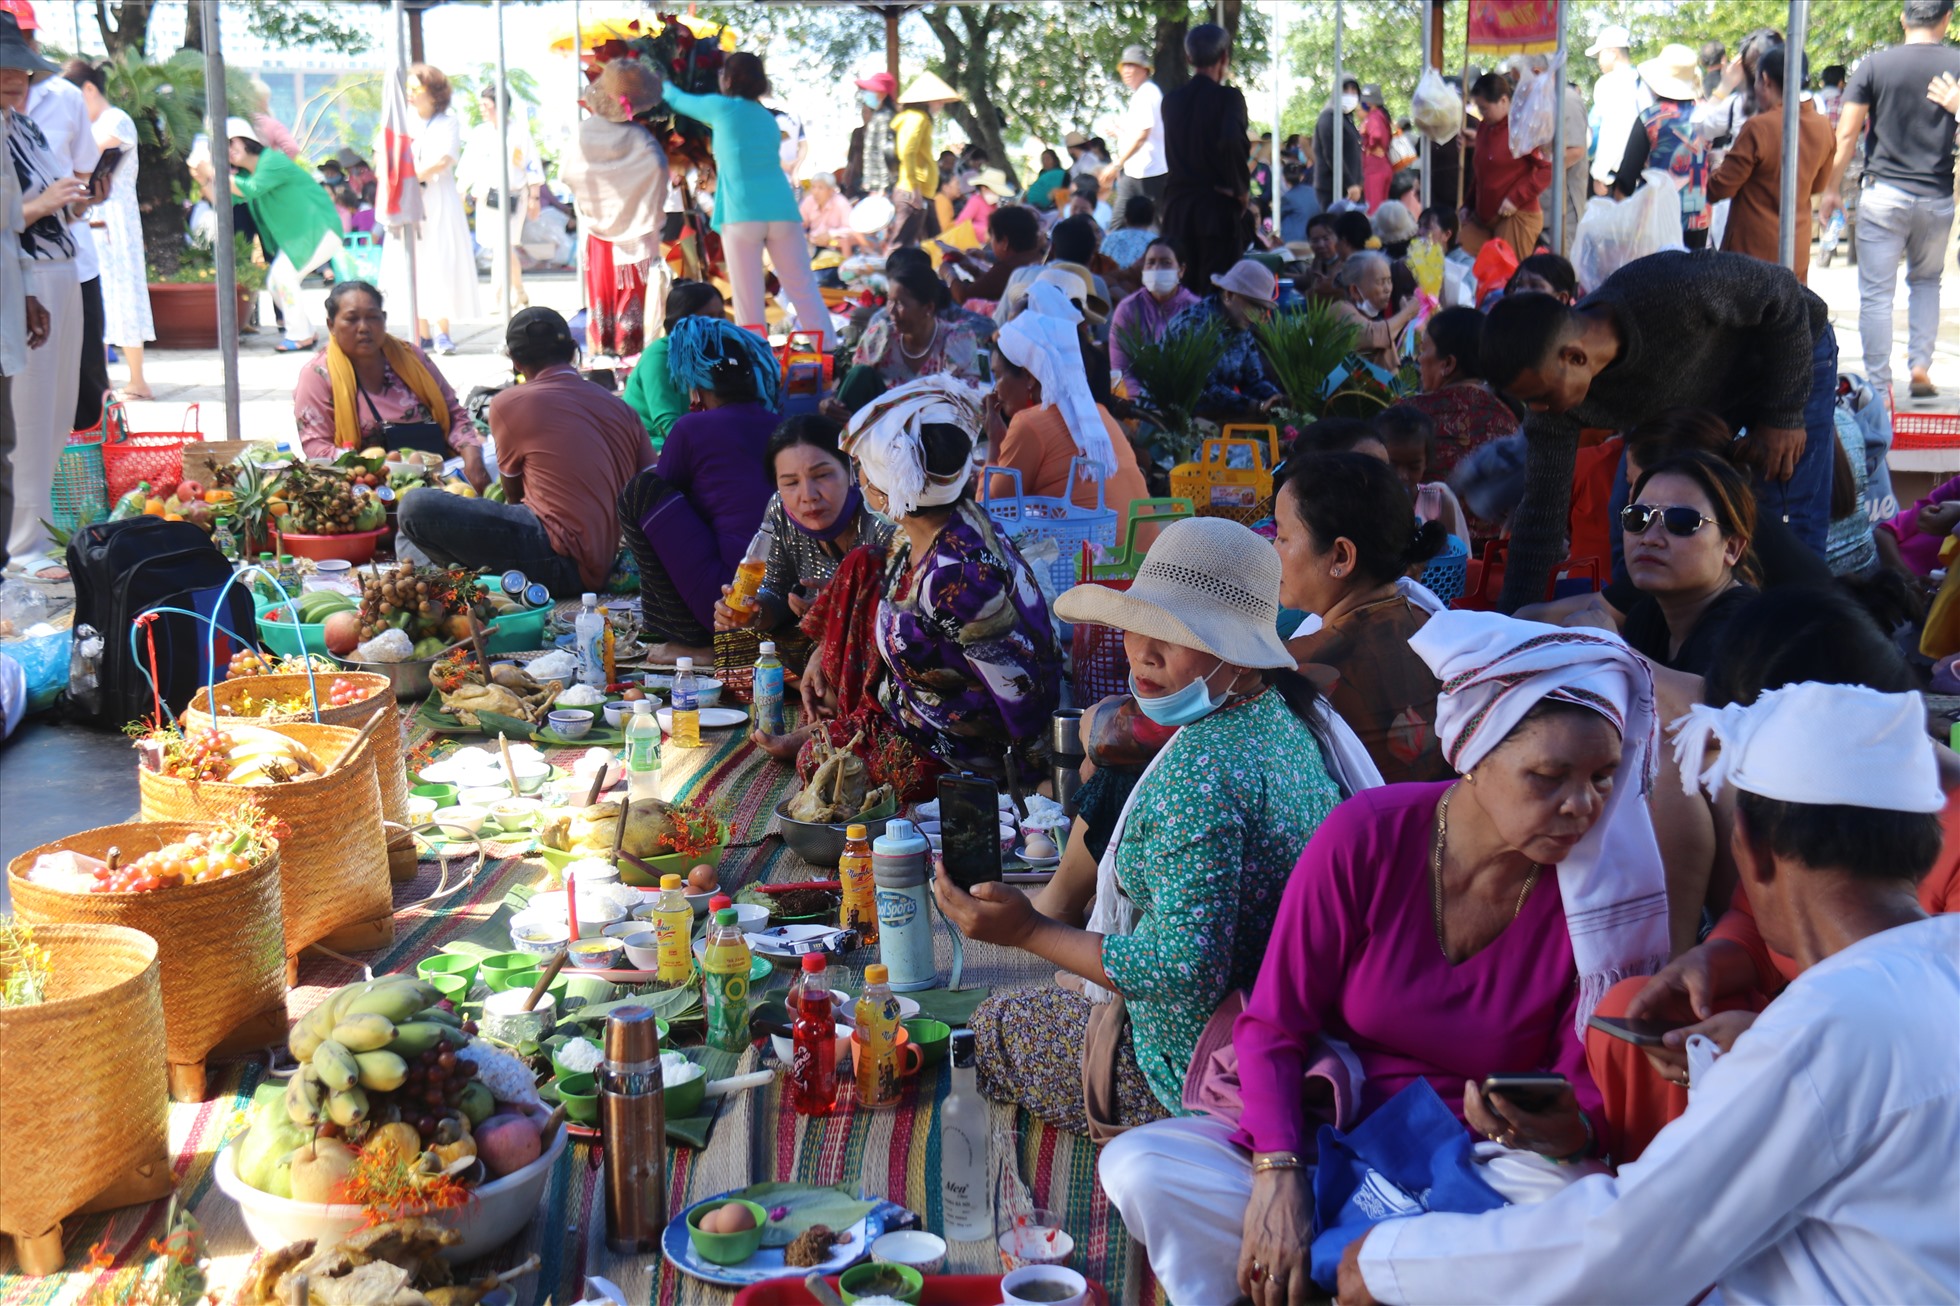 Với đồng bào Chăm lễ hội Tháp Bà Ponagar là dịp bắt đầu năm mới, người dân đến đây mang lễ vật đặc sắc để cầu con cháu đông vui, cầu làm ăn thuận lợi, cầu vụ mùa bội thu...